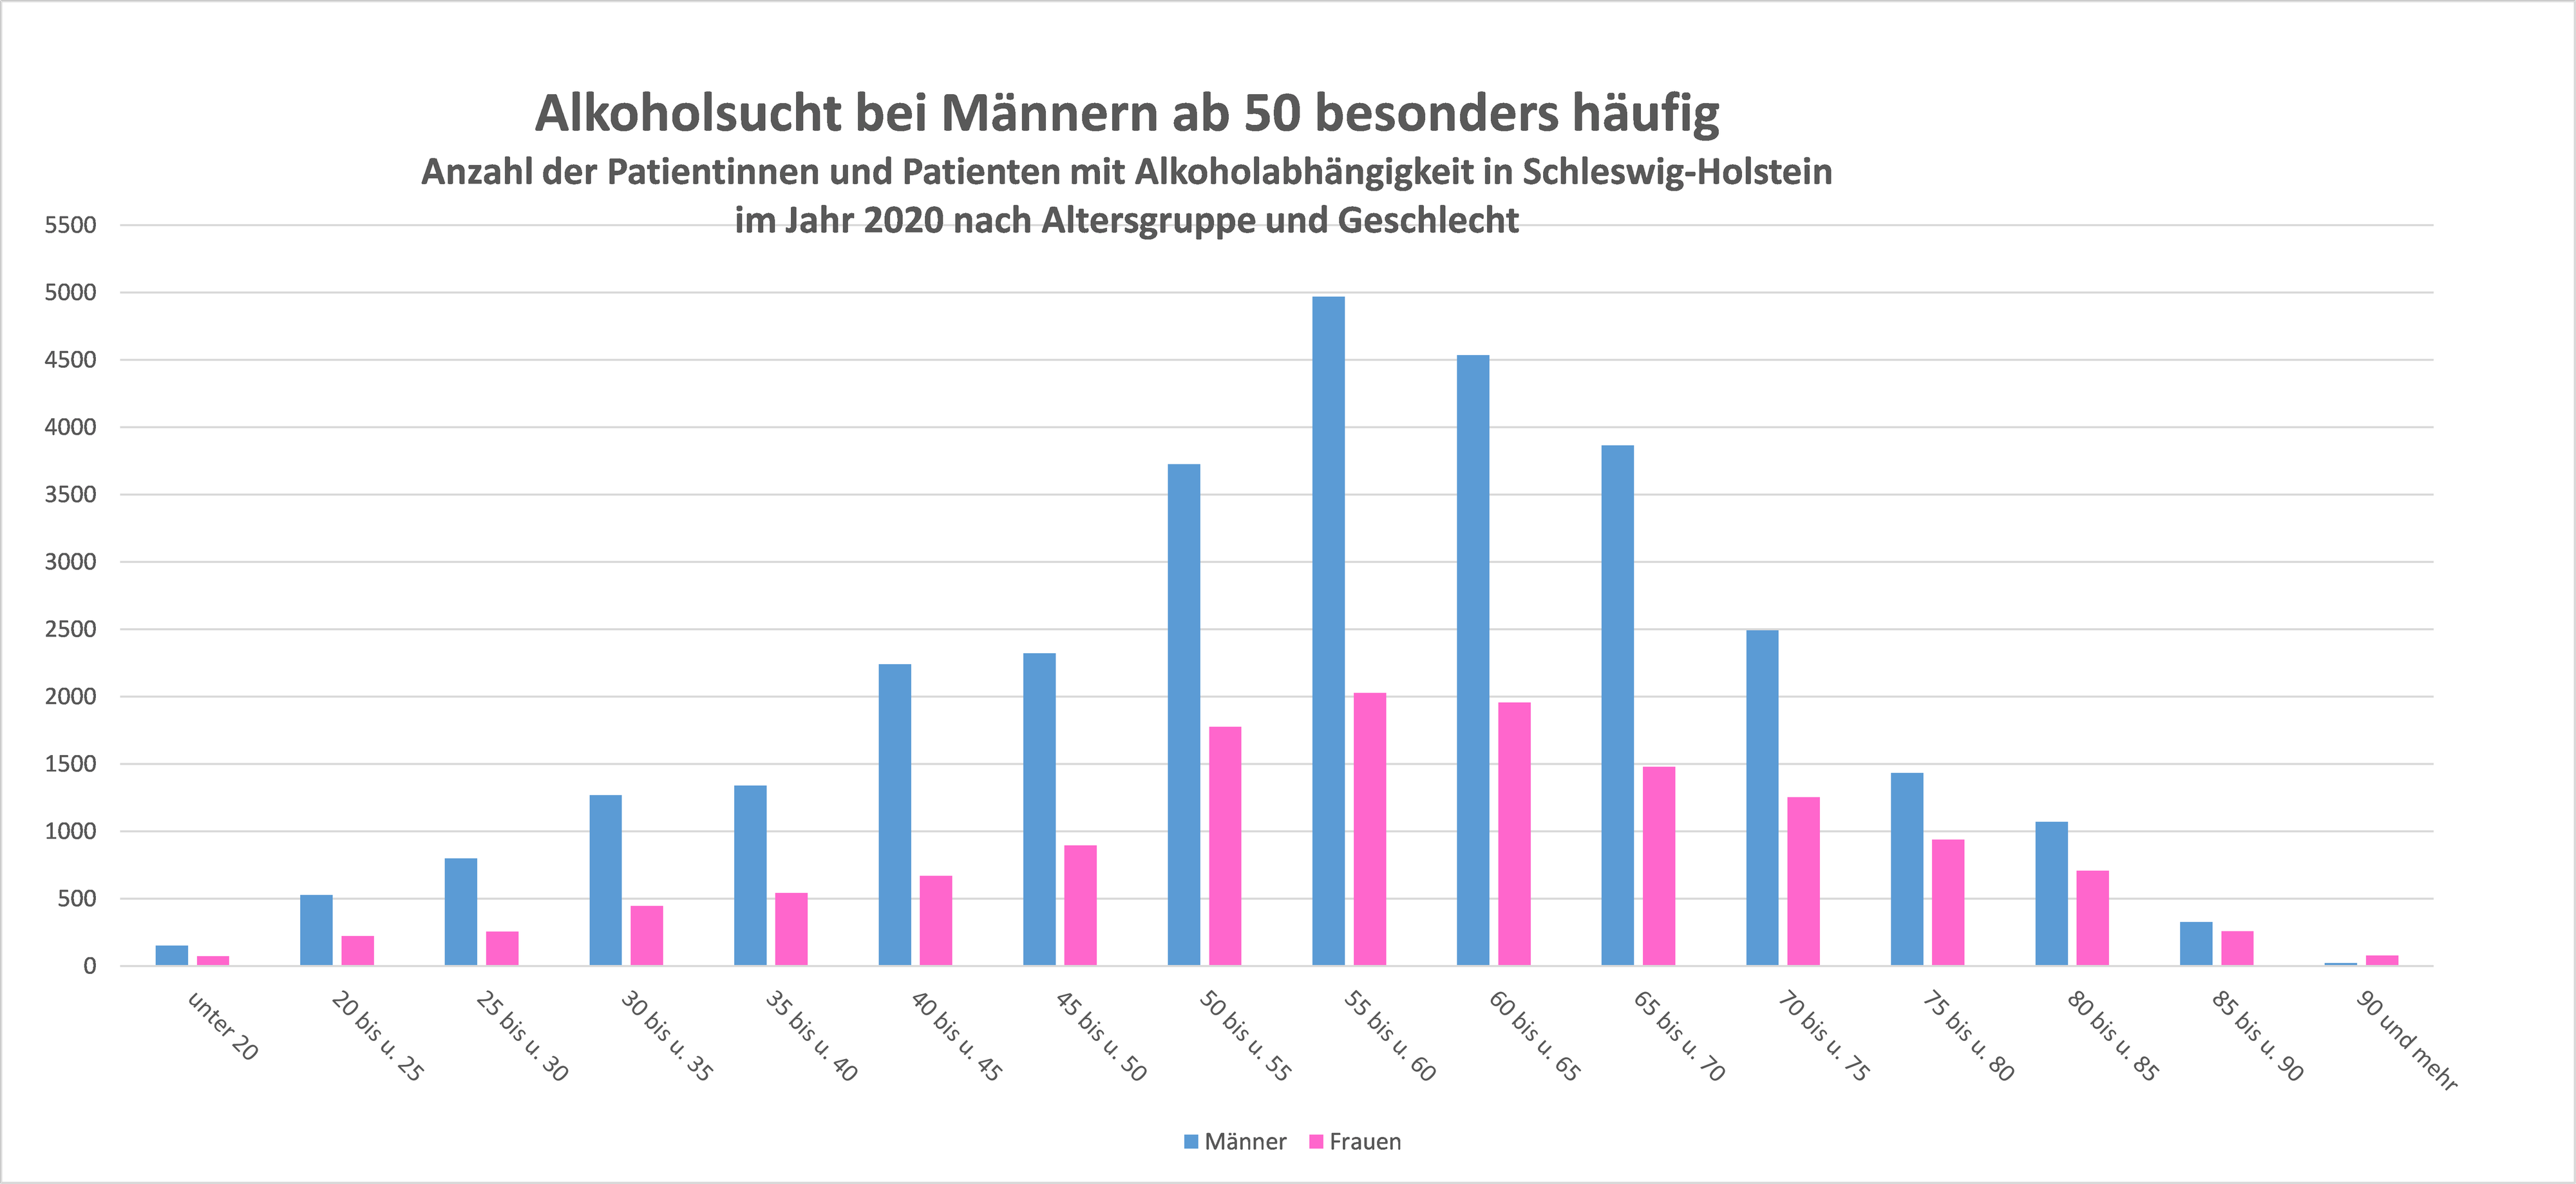 Das Balkendiagramm zeigt die Zahl der Menschen mit Alkoholsucht nach Altersgruppen und Geschlecht in Schleswig-Holstein.